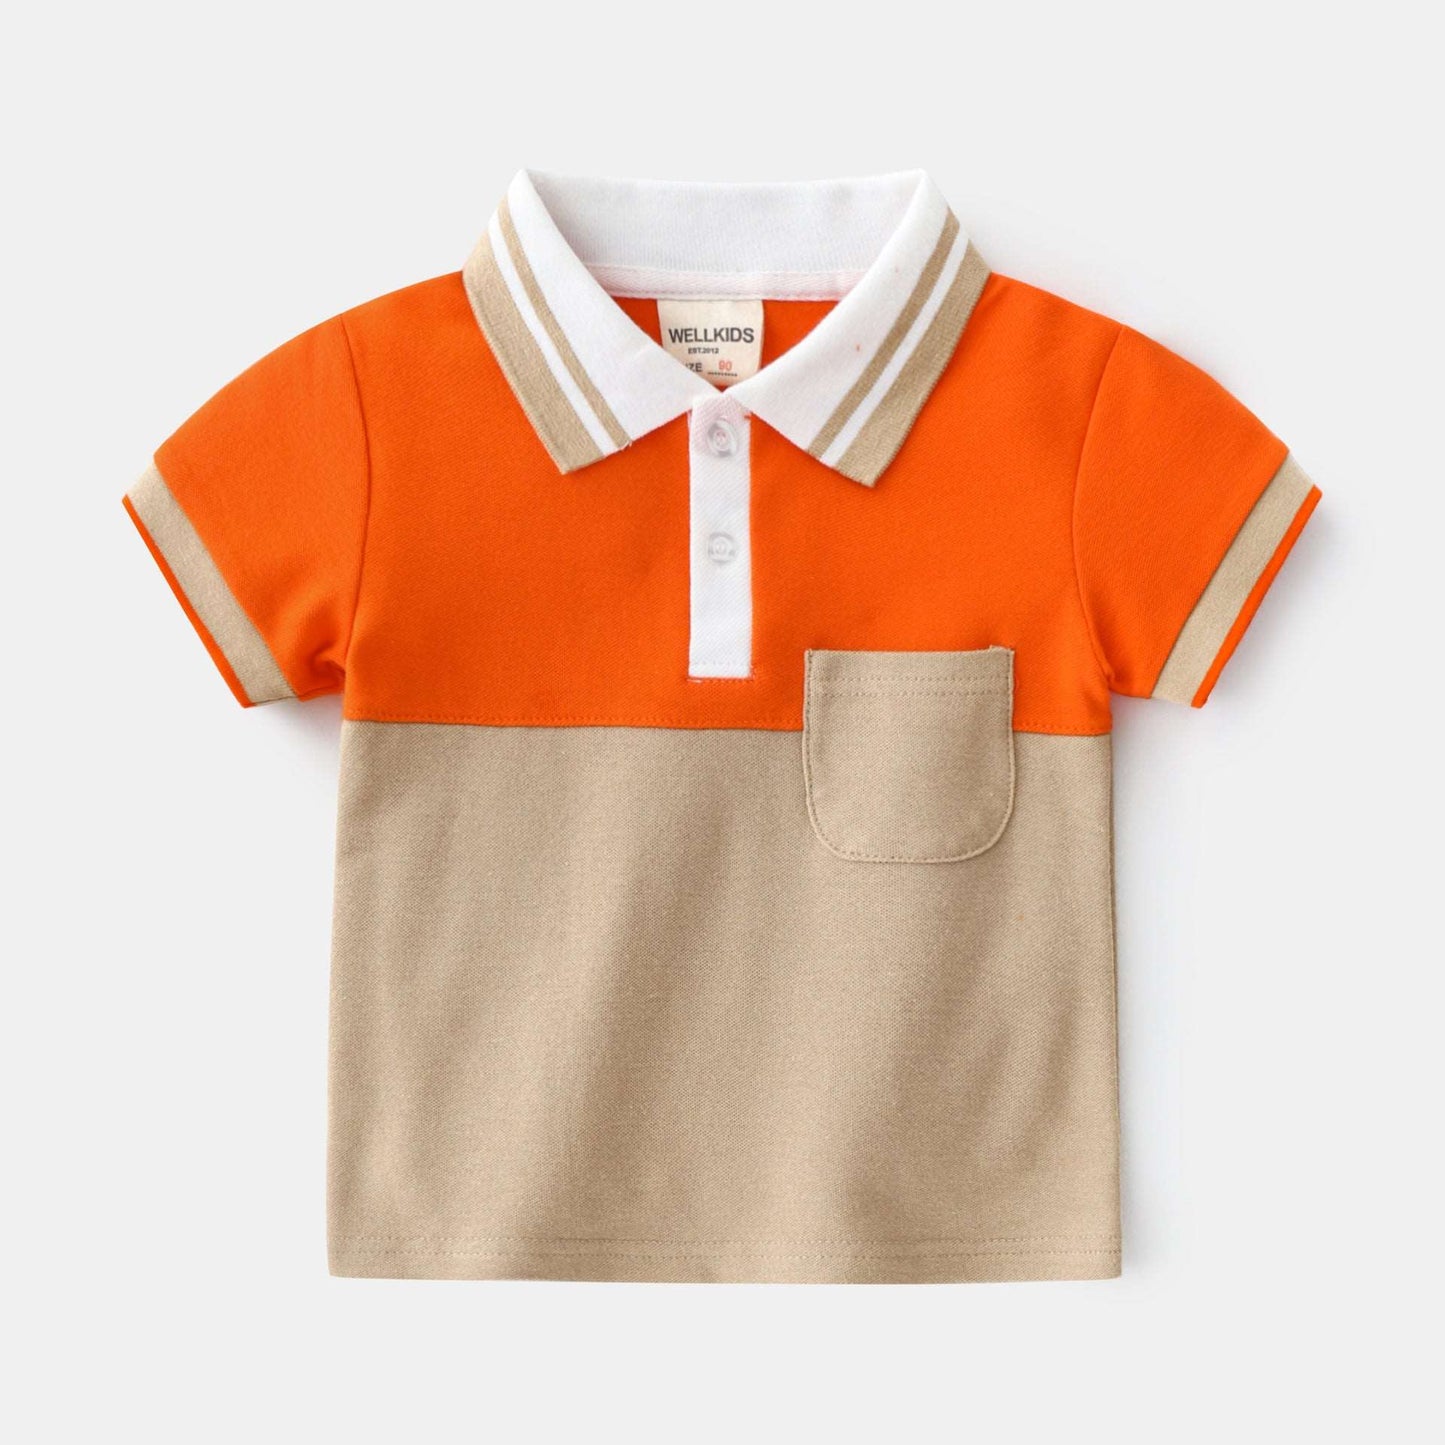 Boy's baby T-shirt short-sleeved summer kids children's top